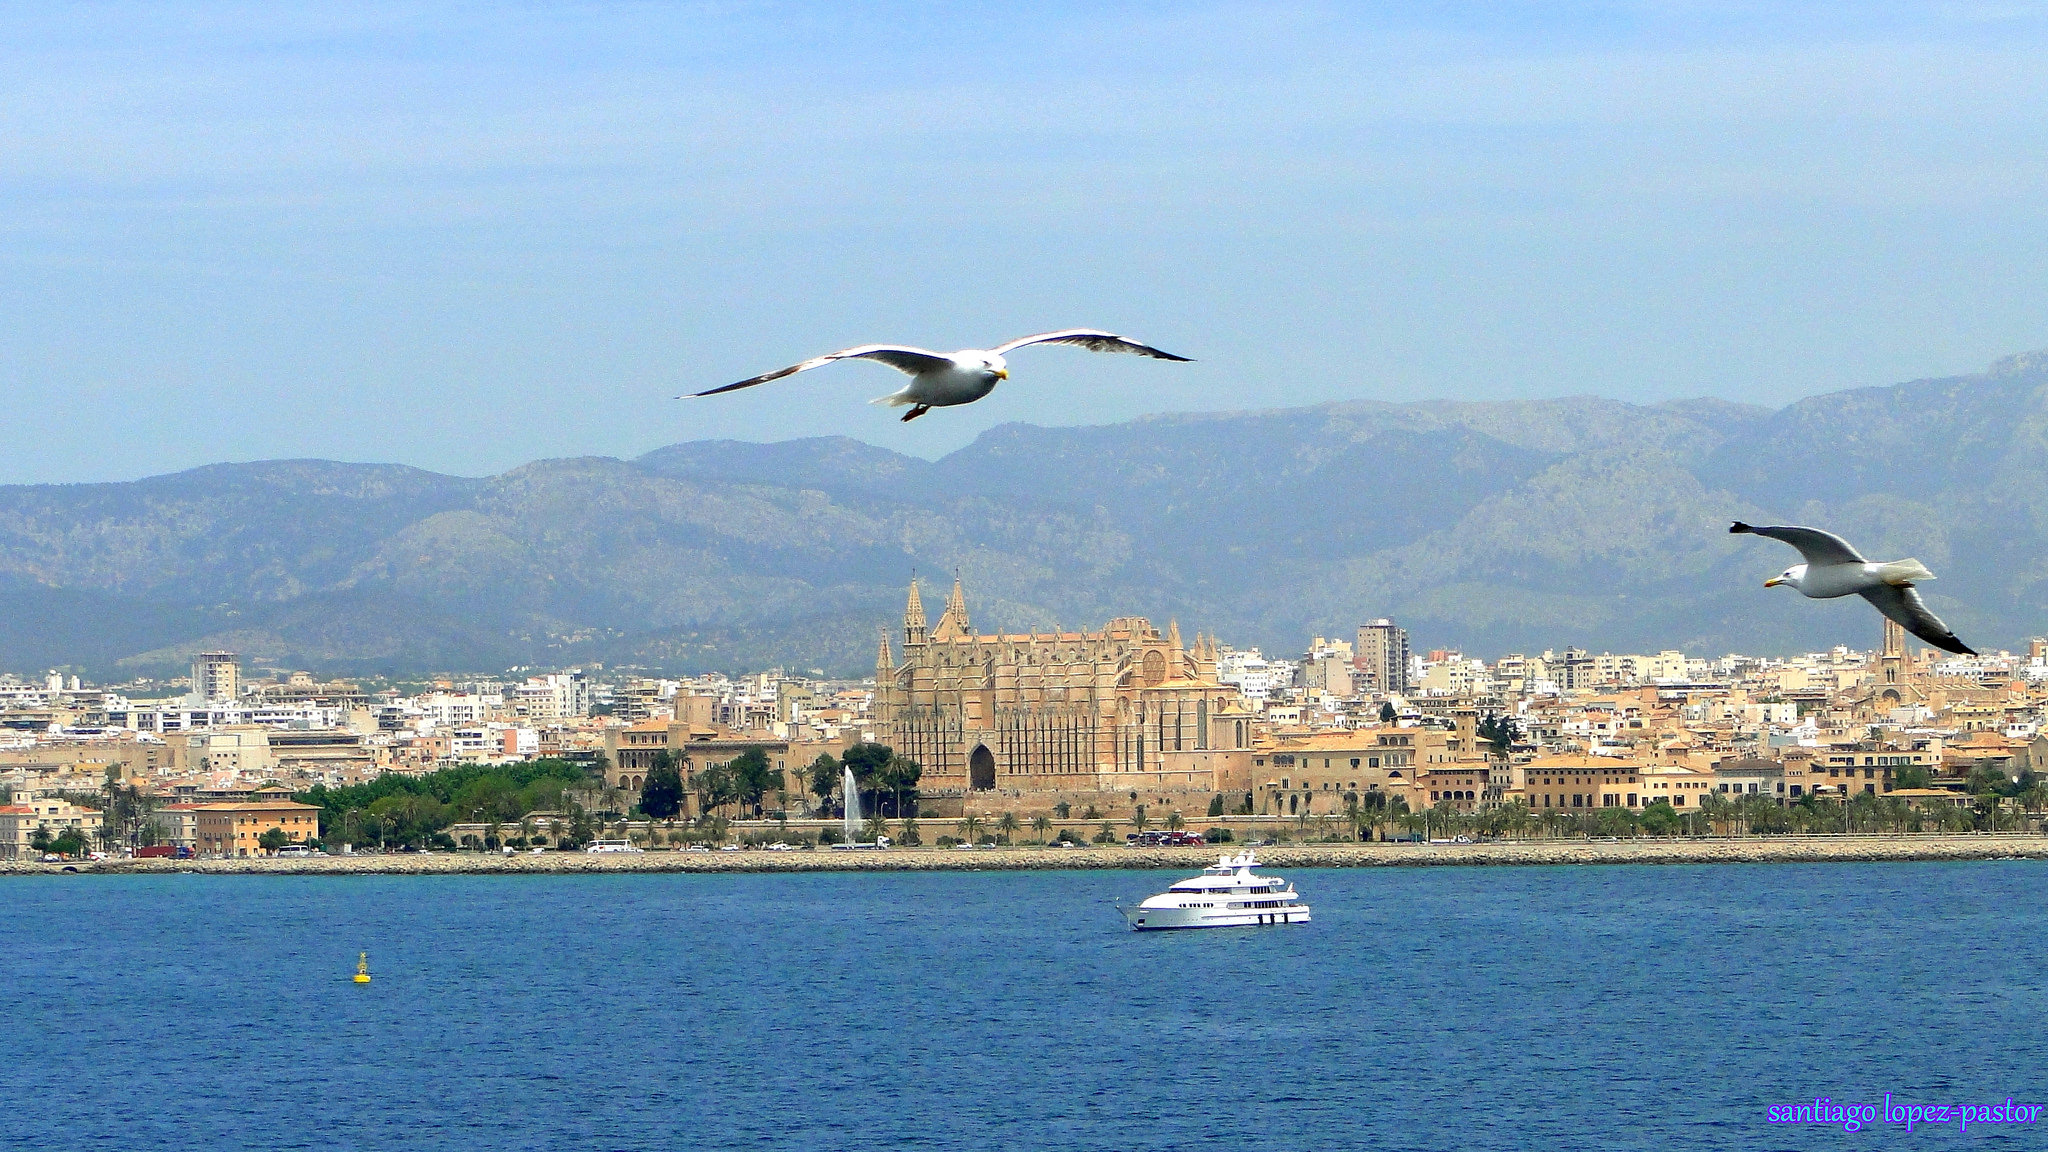 Остров Майорка, Испания: интересные достопримечательности, как добраться, чем заняться, туристические лайфхаки